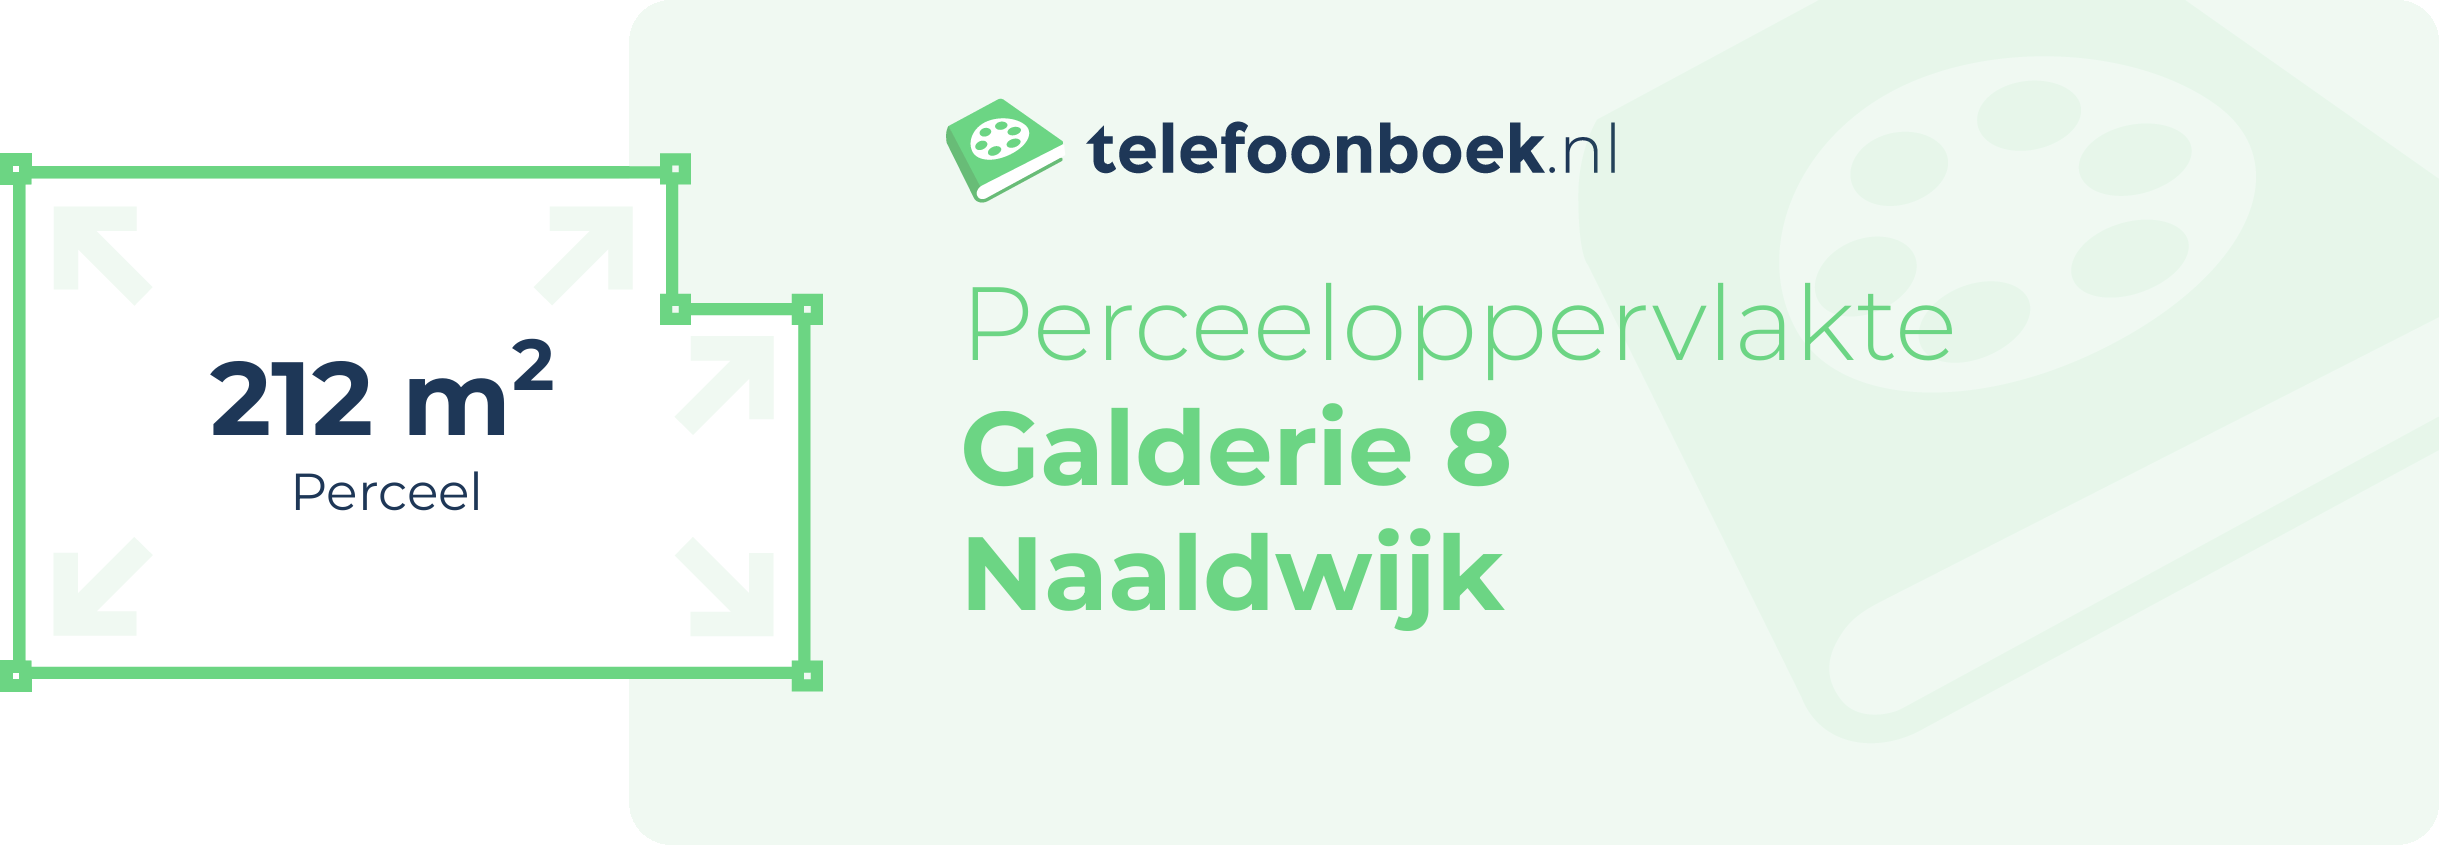 Perceeloppervlakte Galderie 8 Naaldwijk